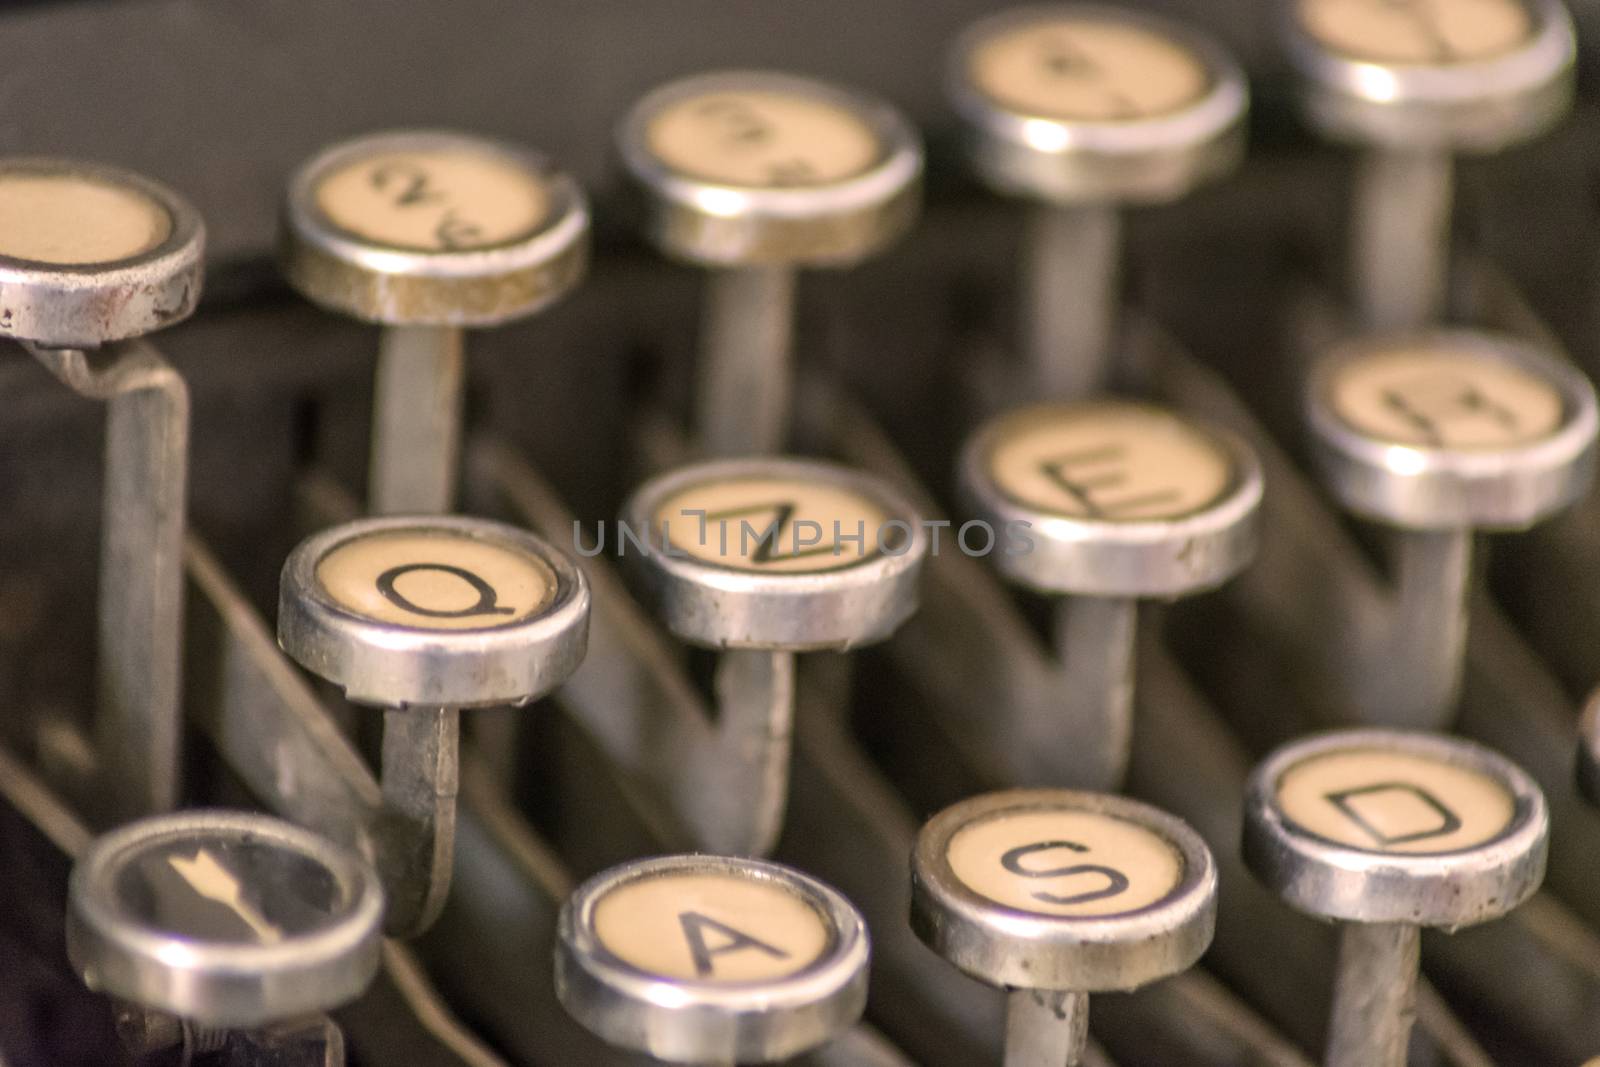 old fashioned typewriter keys by rarrarorro